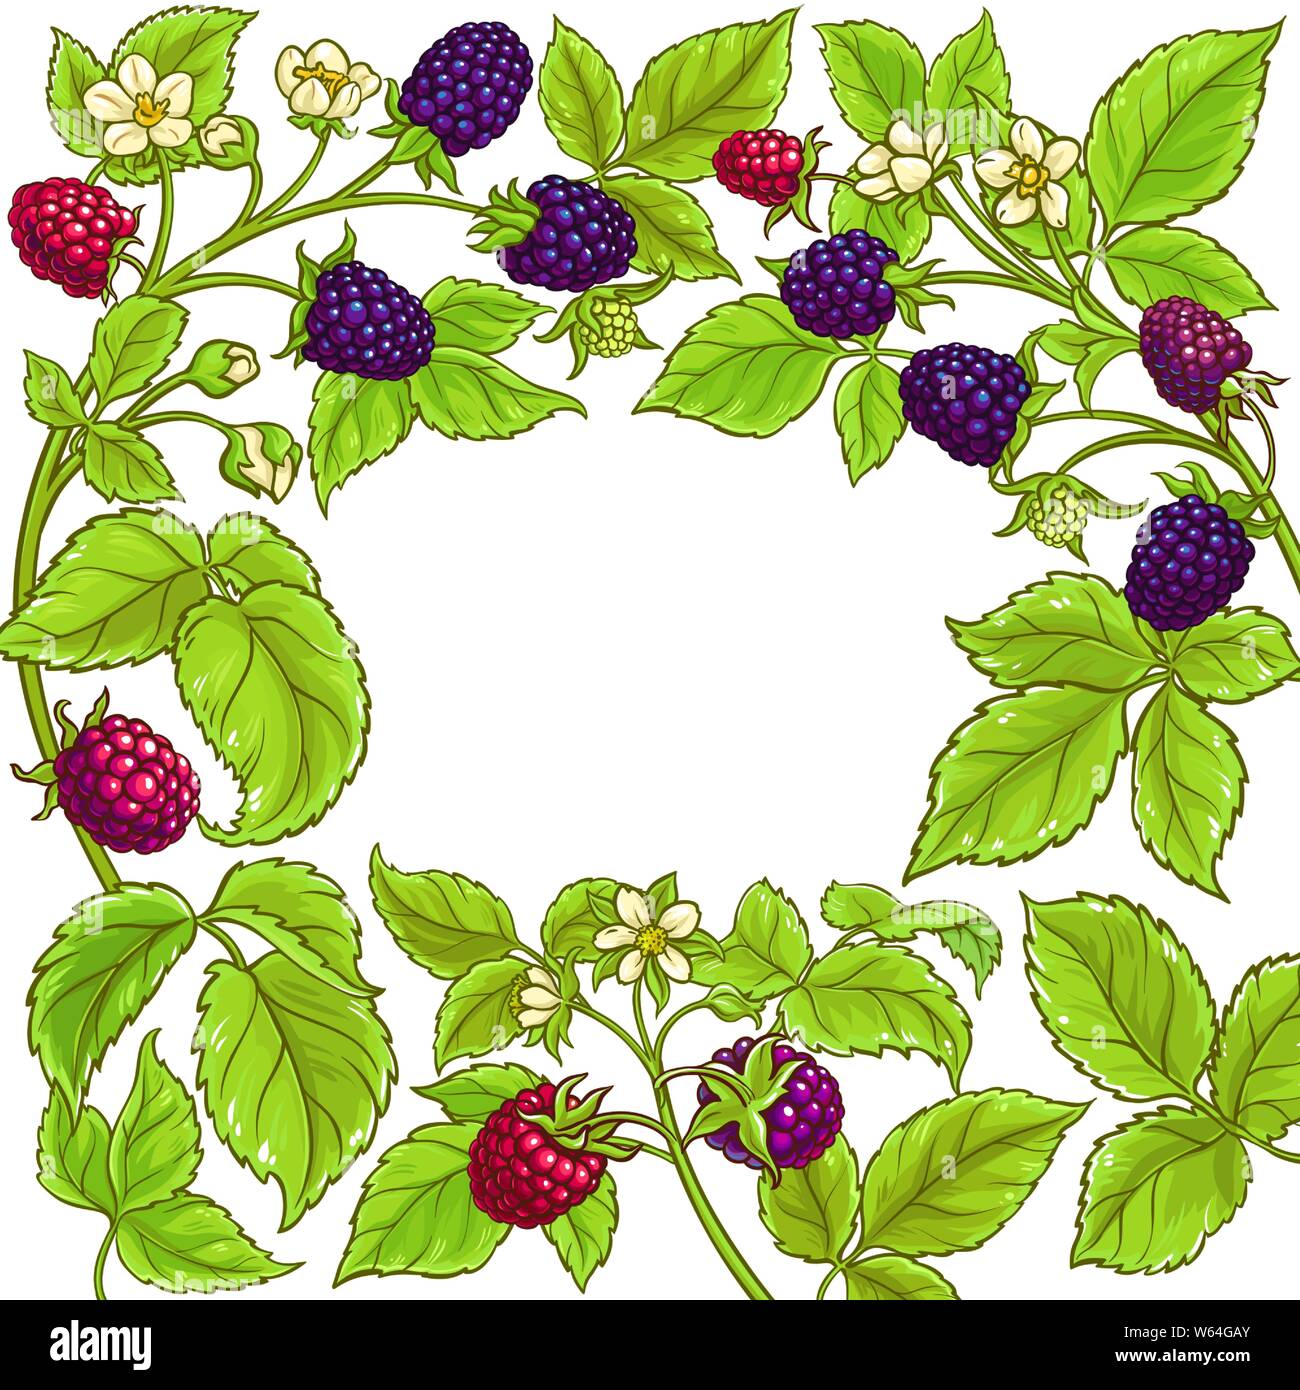 boysenberry vector frame on white background Stock Vector